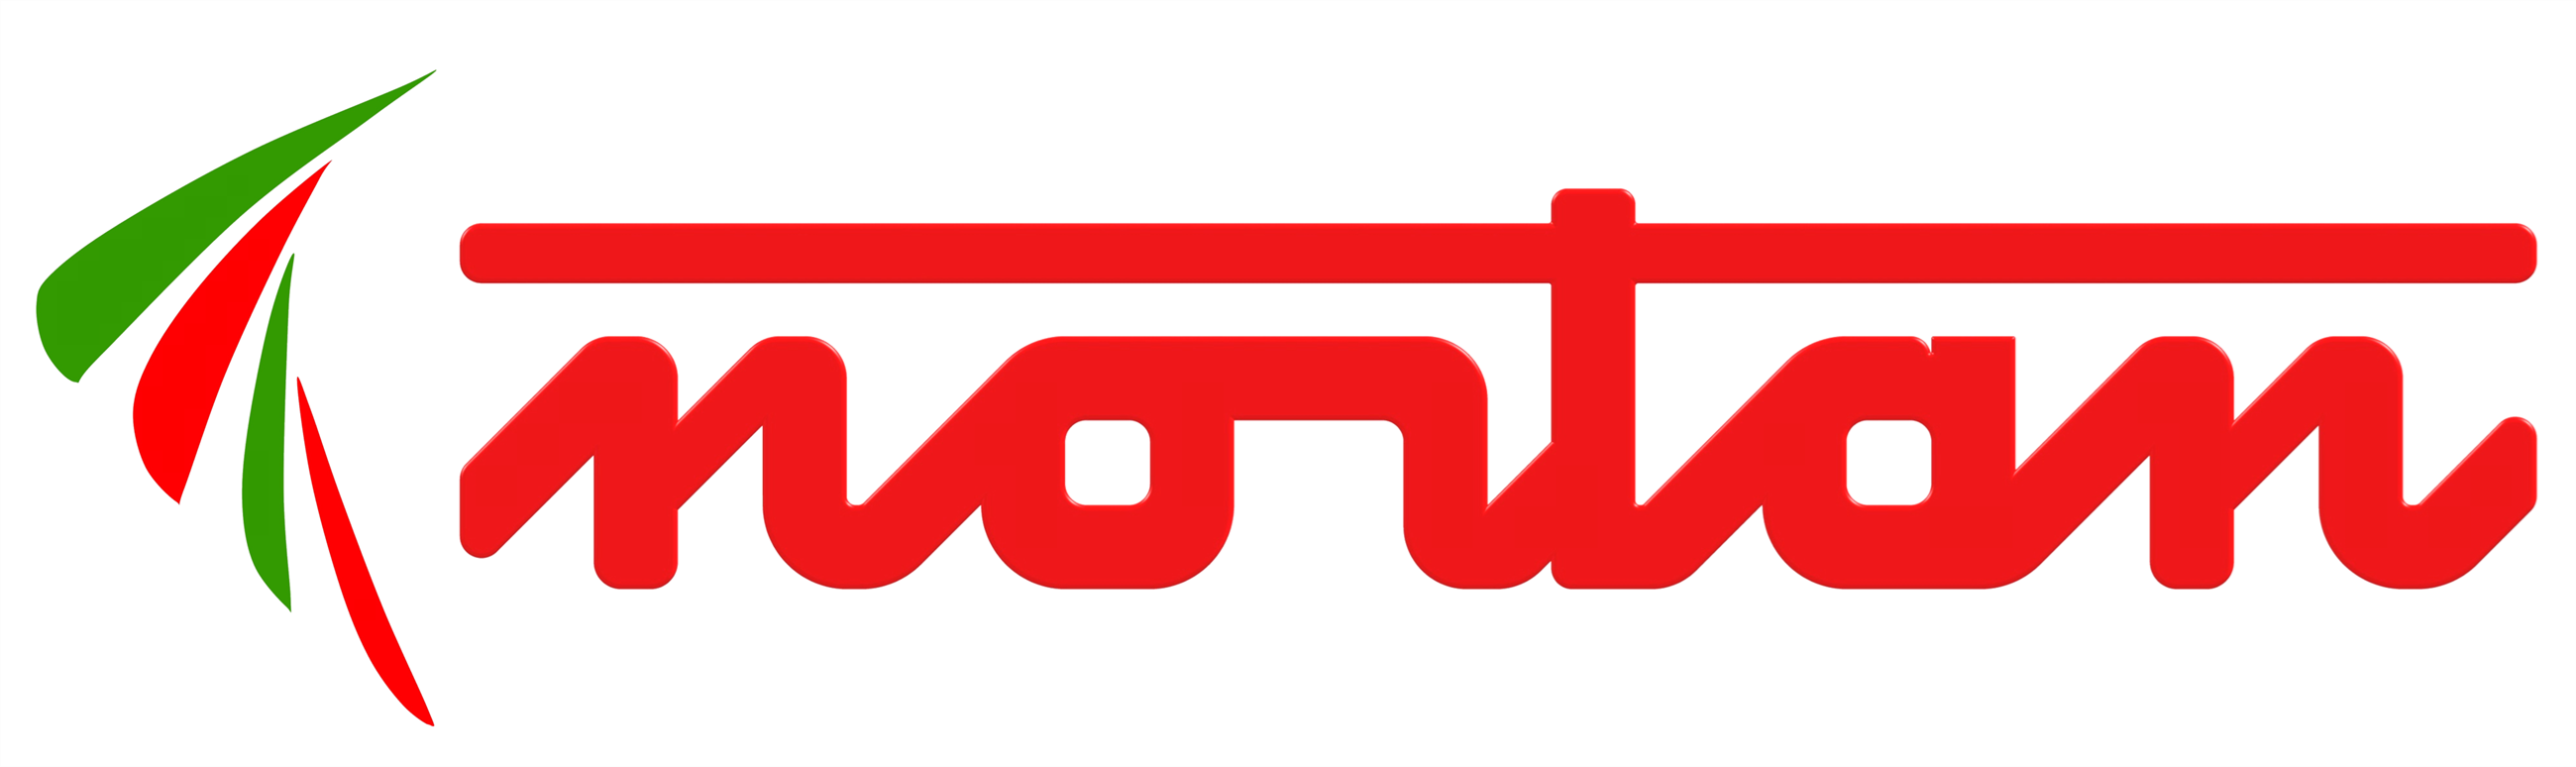 logo nortan